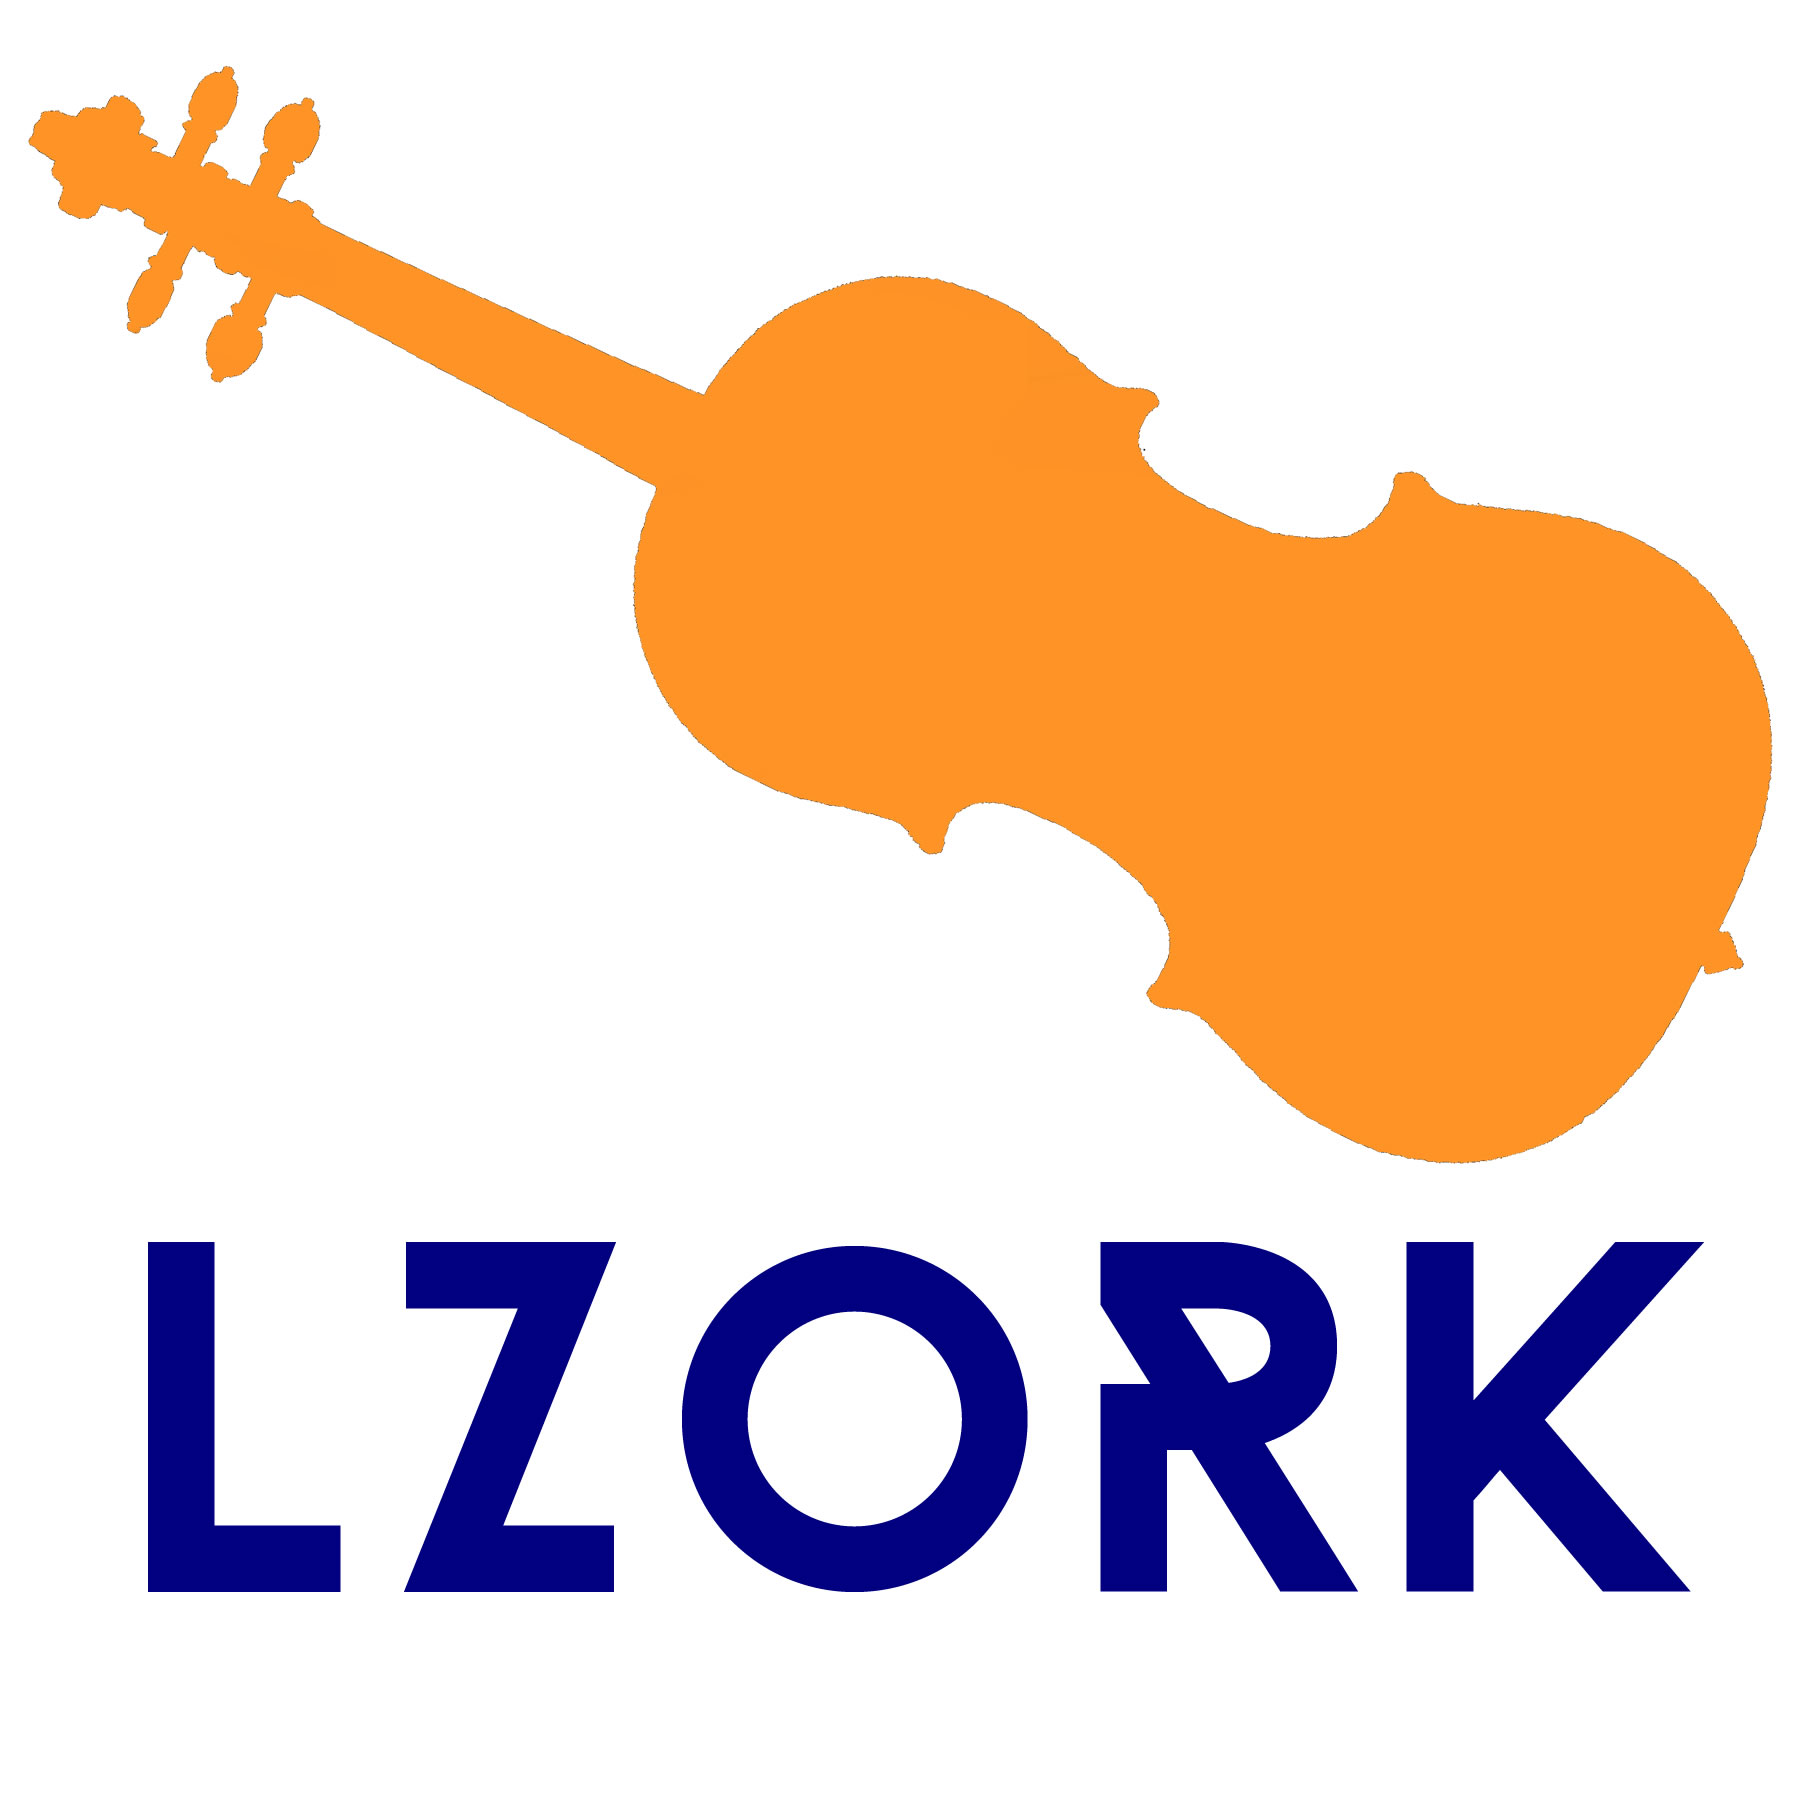 LZOrk